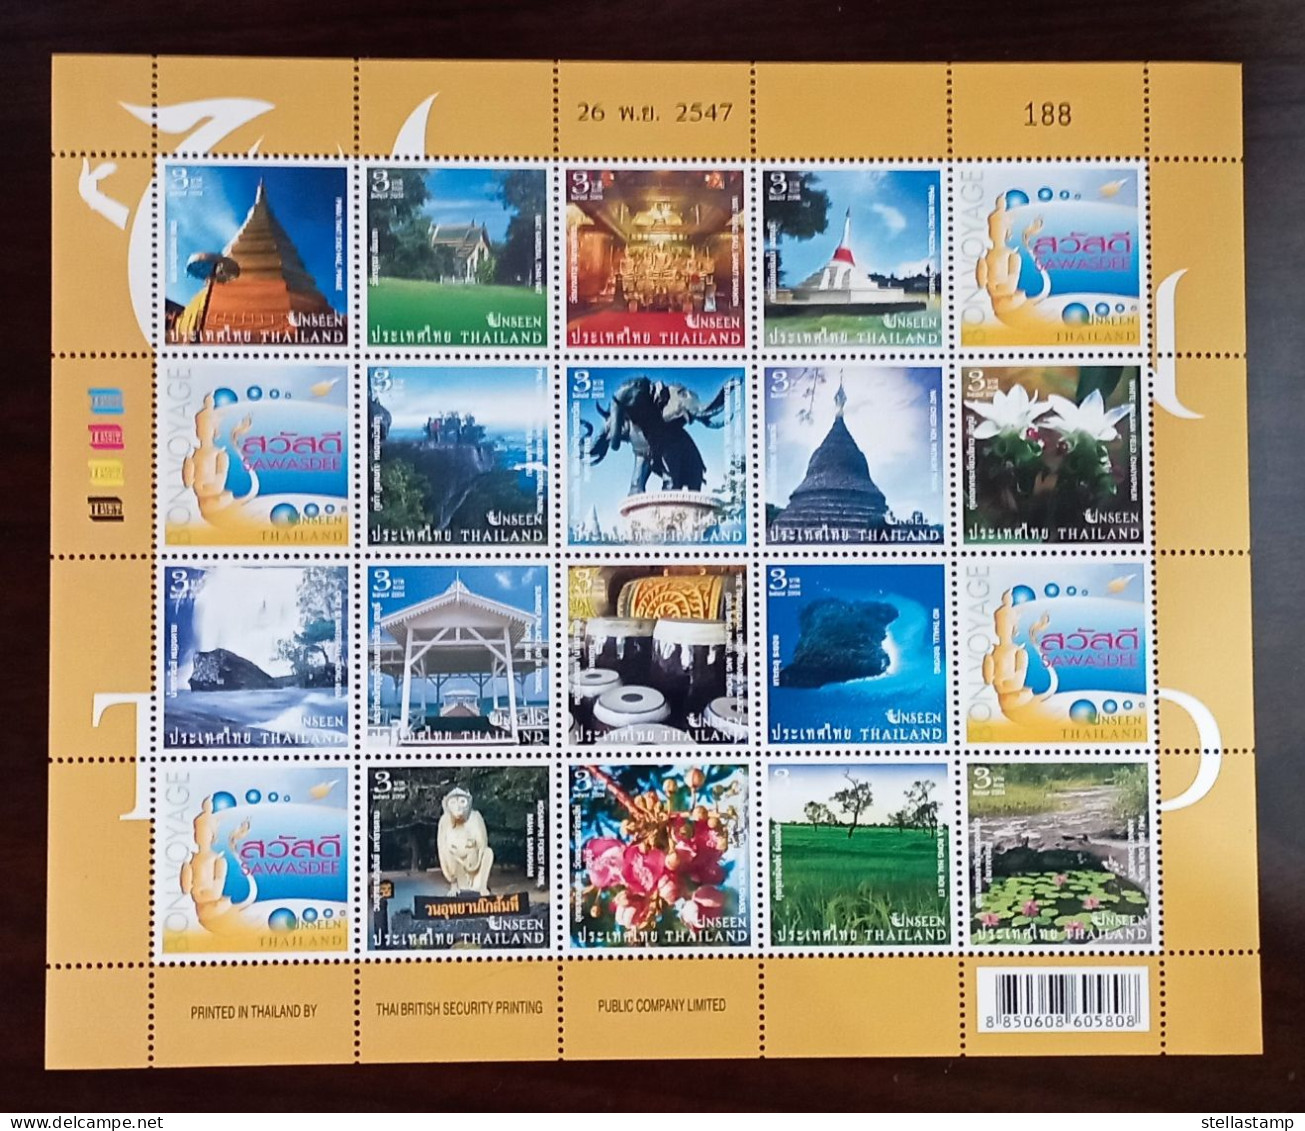 Thailand Stamp FS 2004 Unseen Thailand 4th - Tailandia